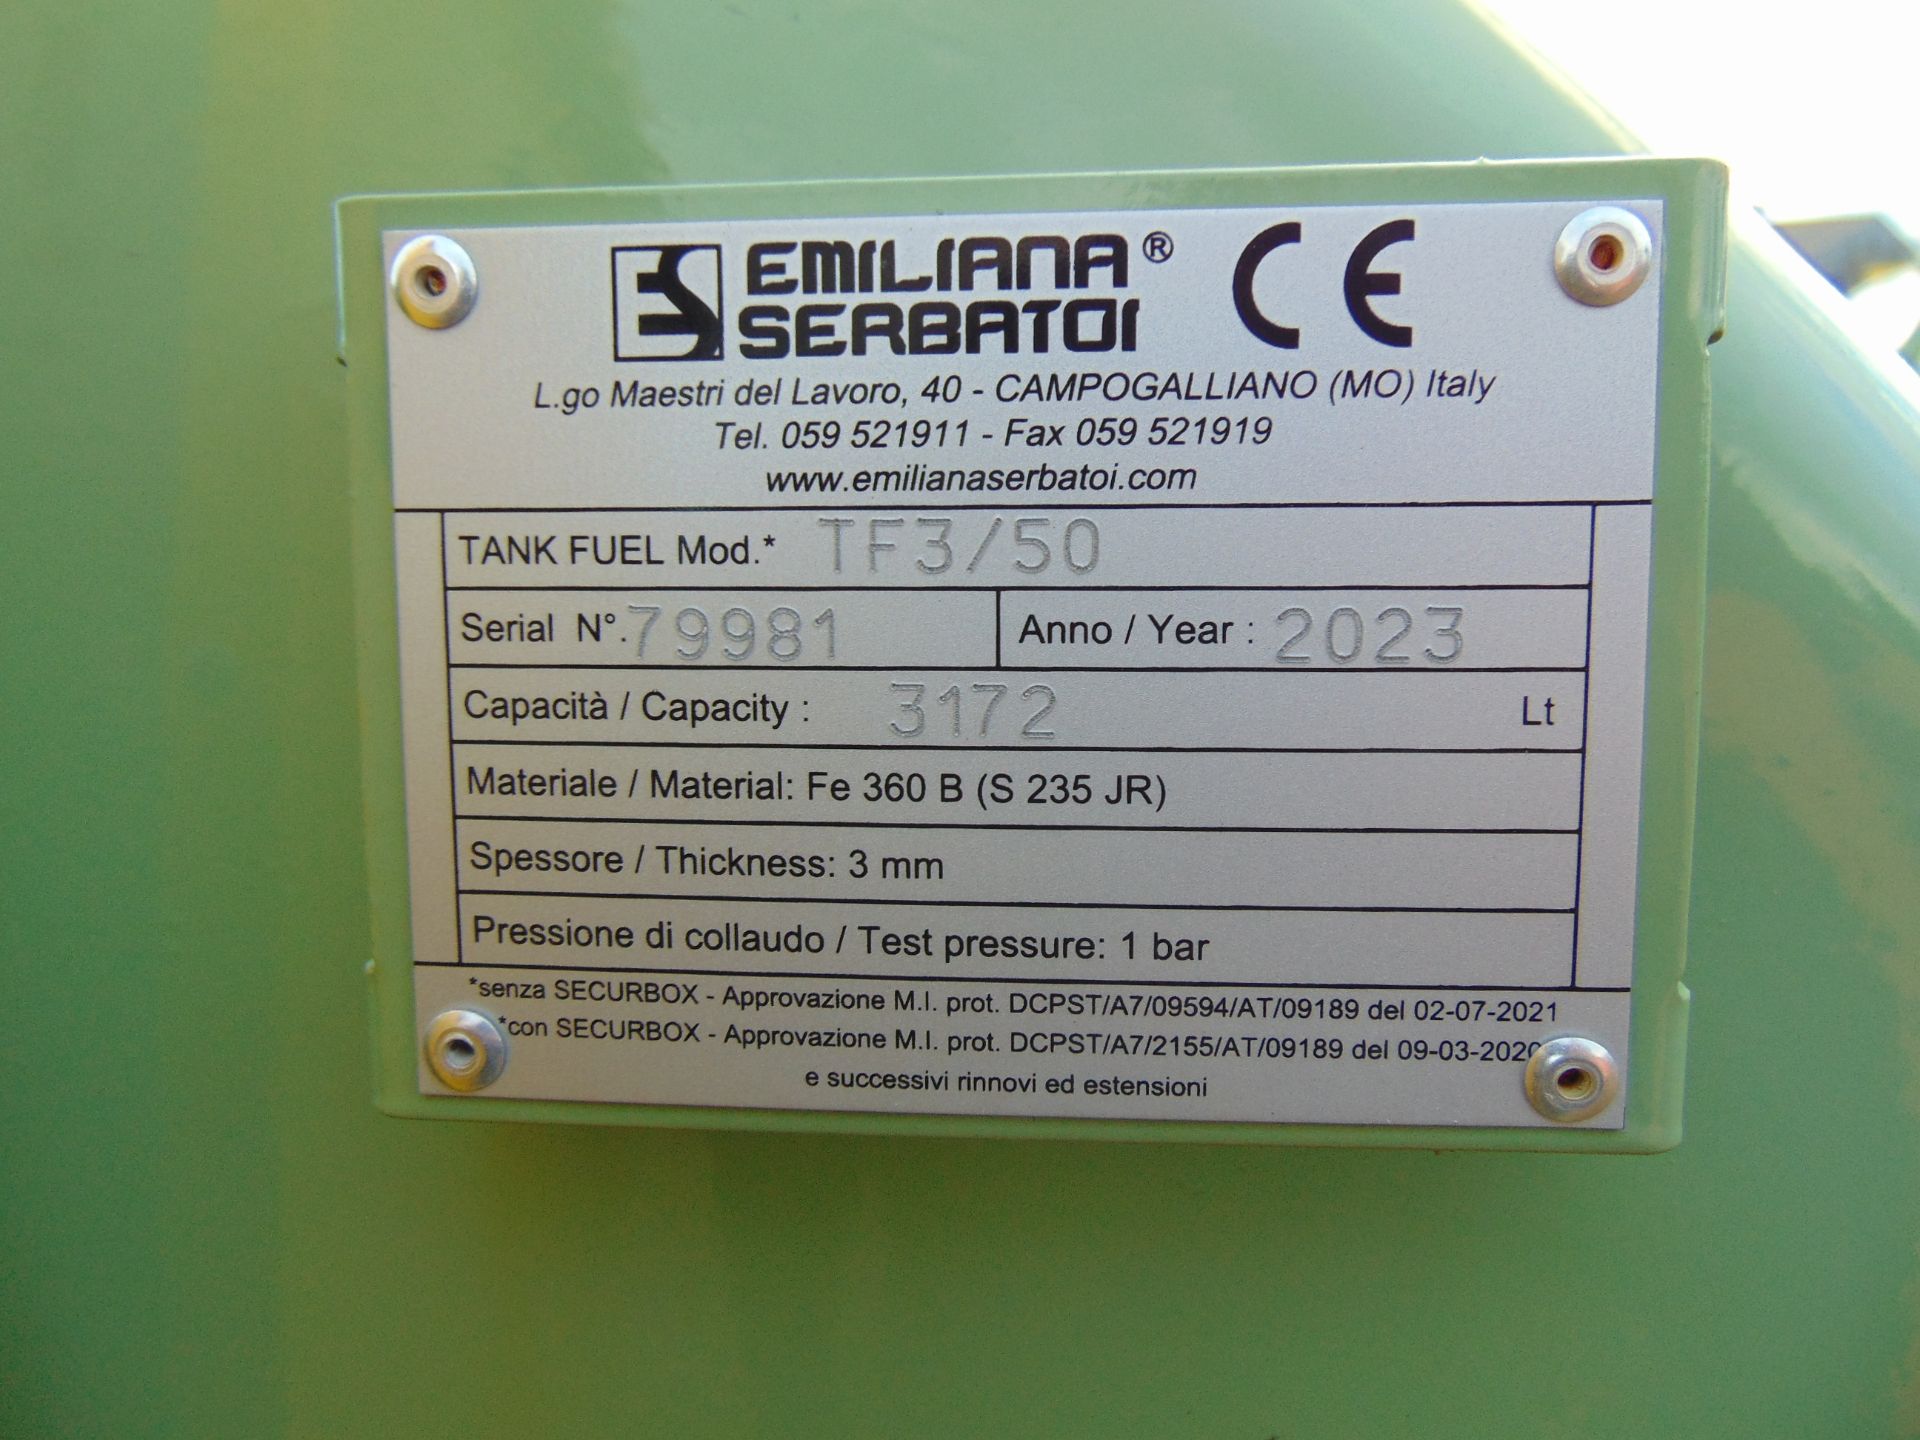 NEW UNUSED Emiliana Serbatoi 2023 TF3/50 3172 litre BUNDED Diesel Fuel Tank - Image 2 of 10